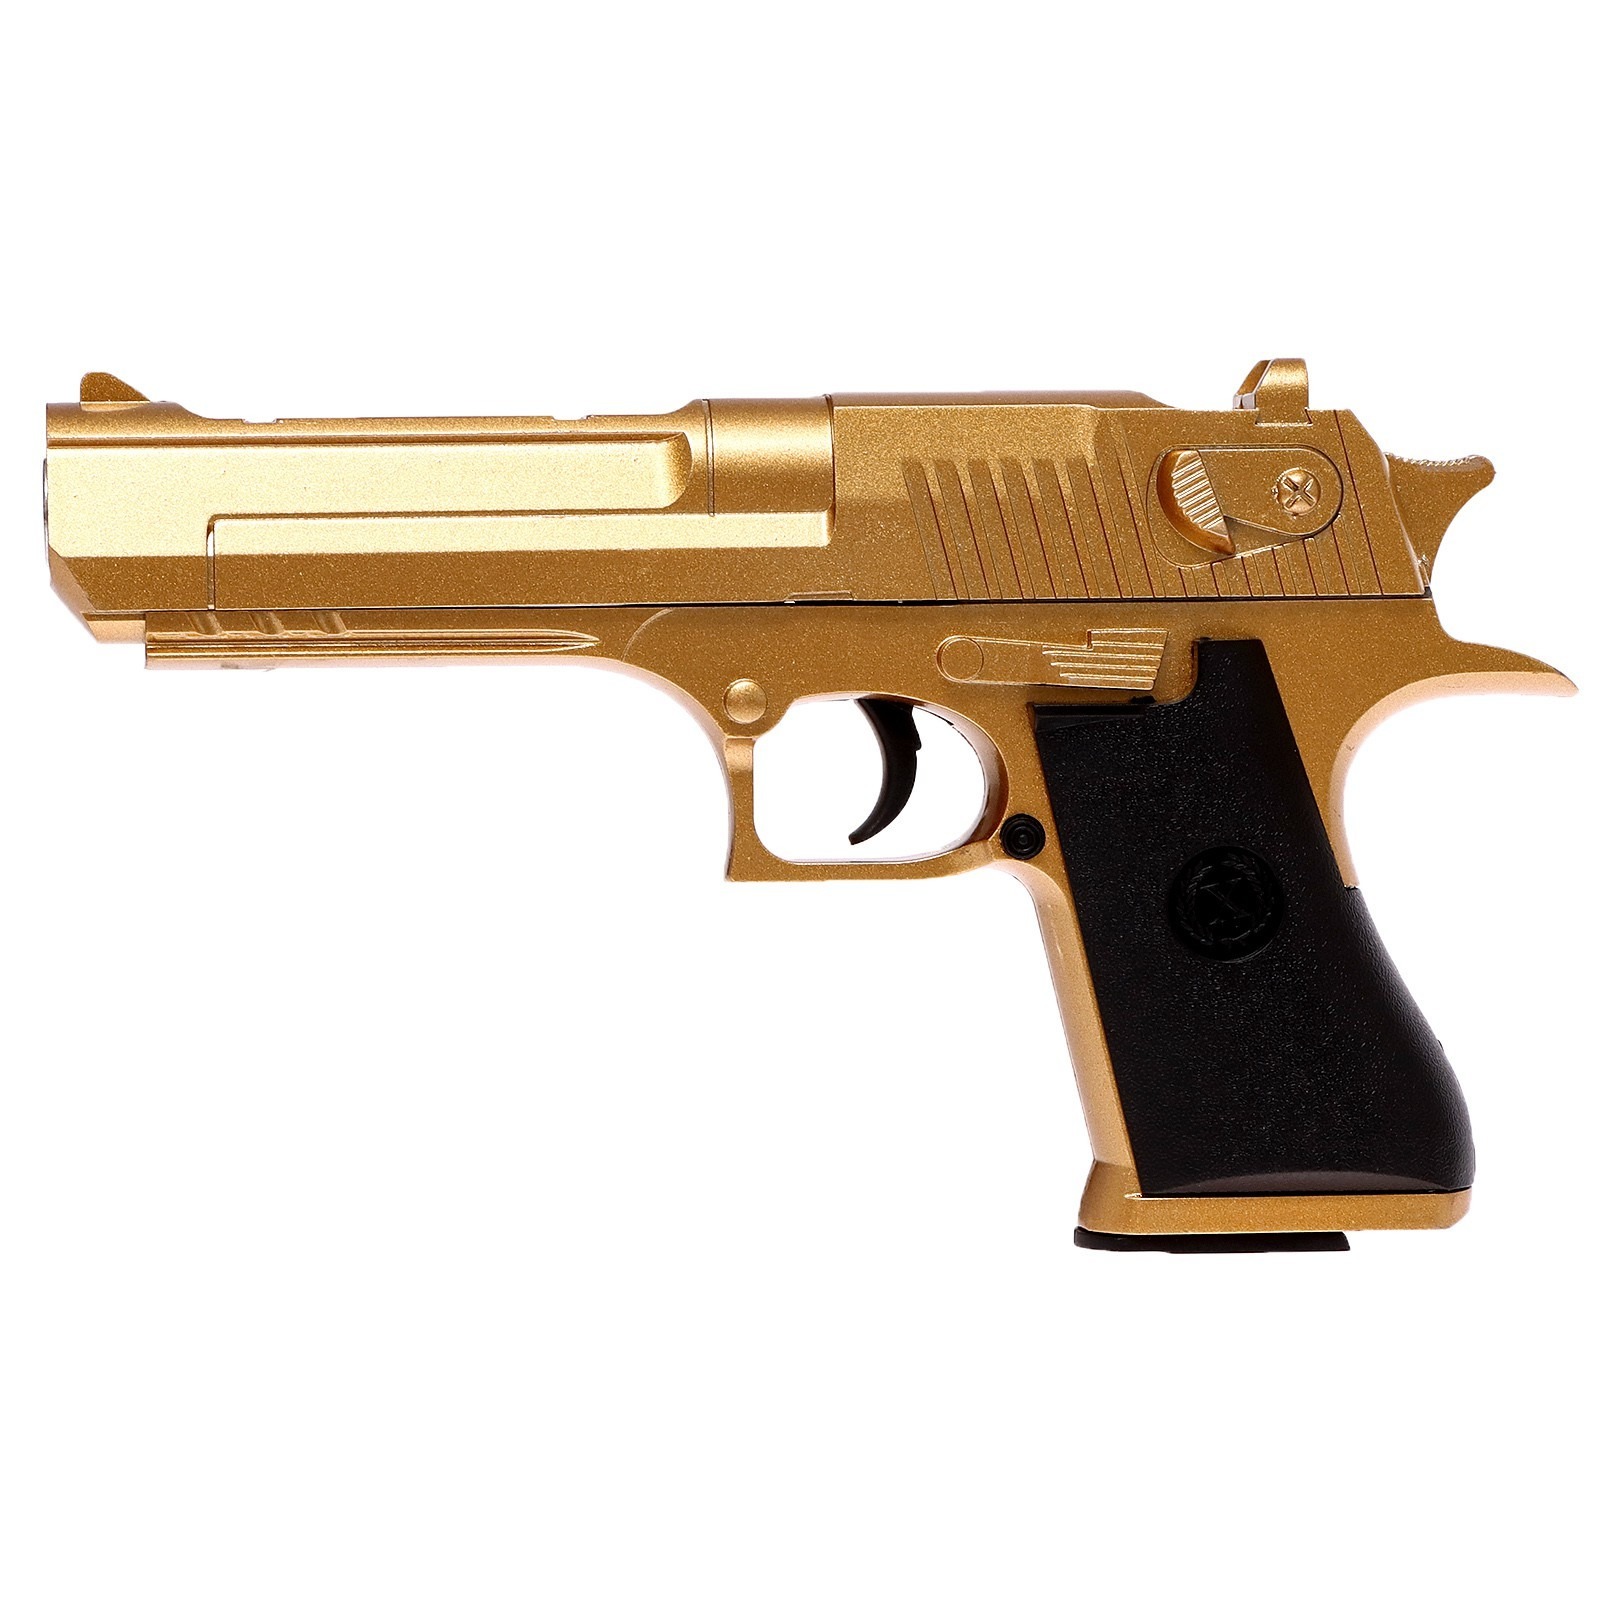 Пистолет игрушечный КНР Desert Eagle Gold, с металл, пластик, в коробке (K111B) пистолет desert eagle gold с металлическими элементами